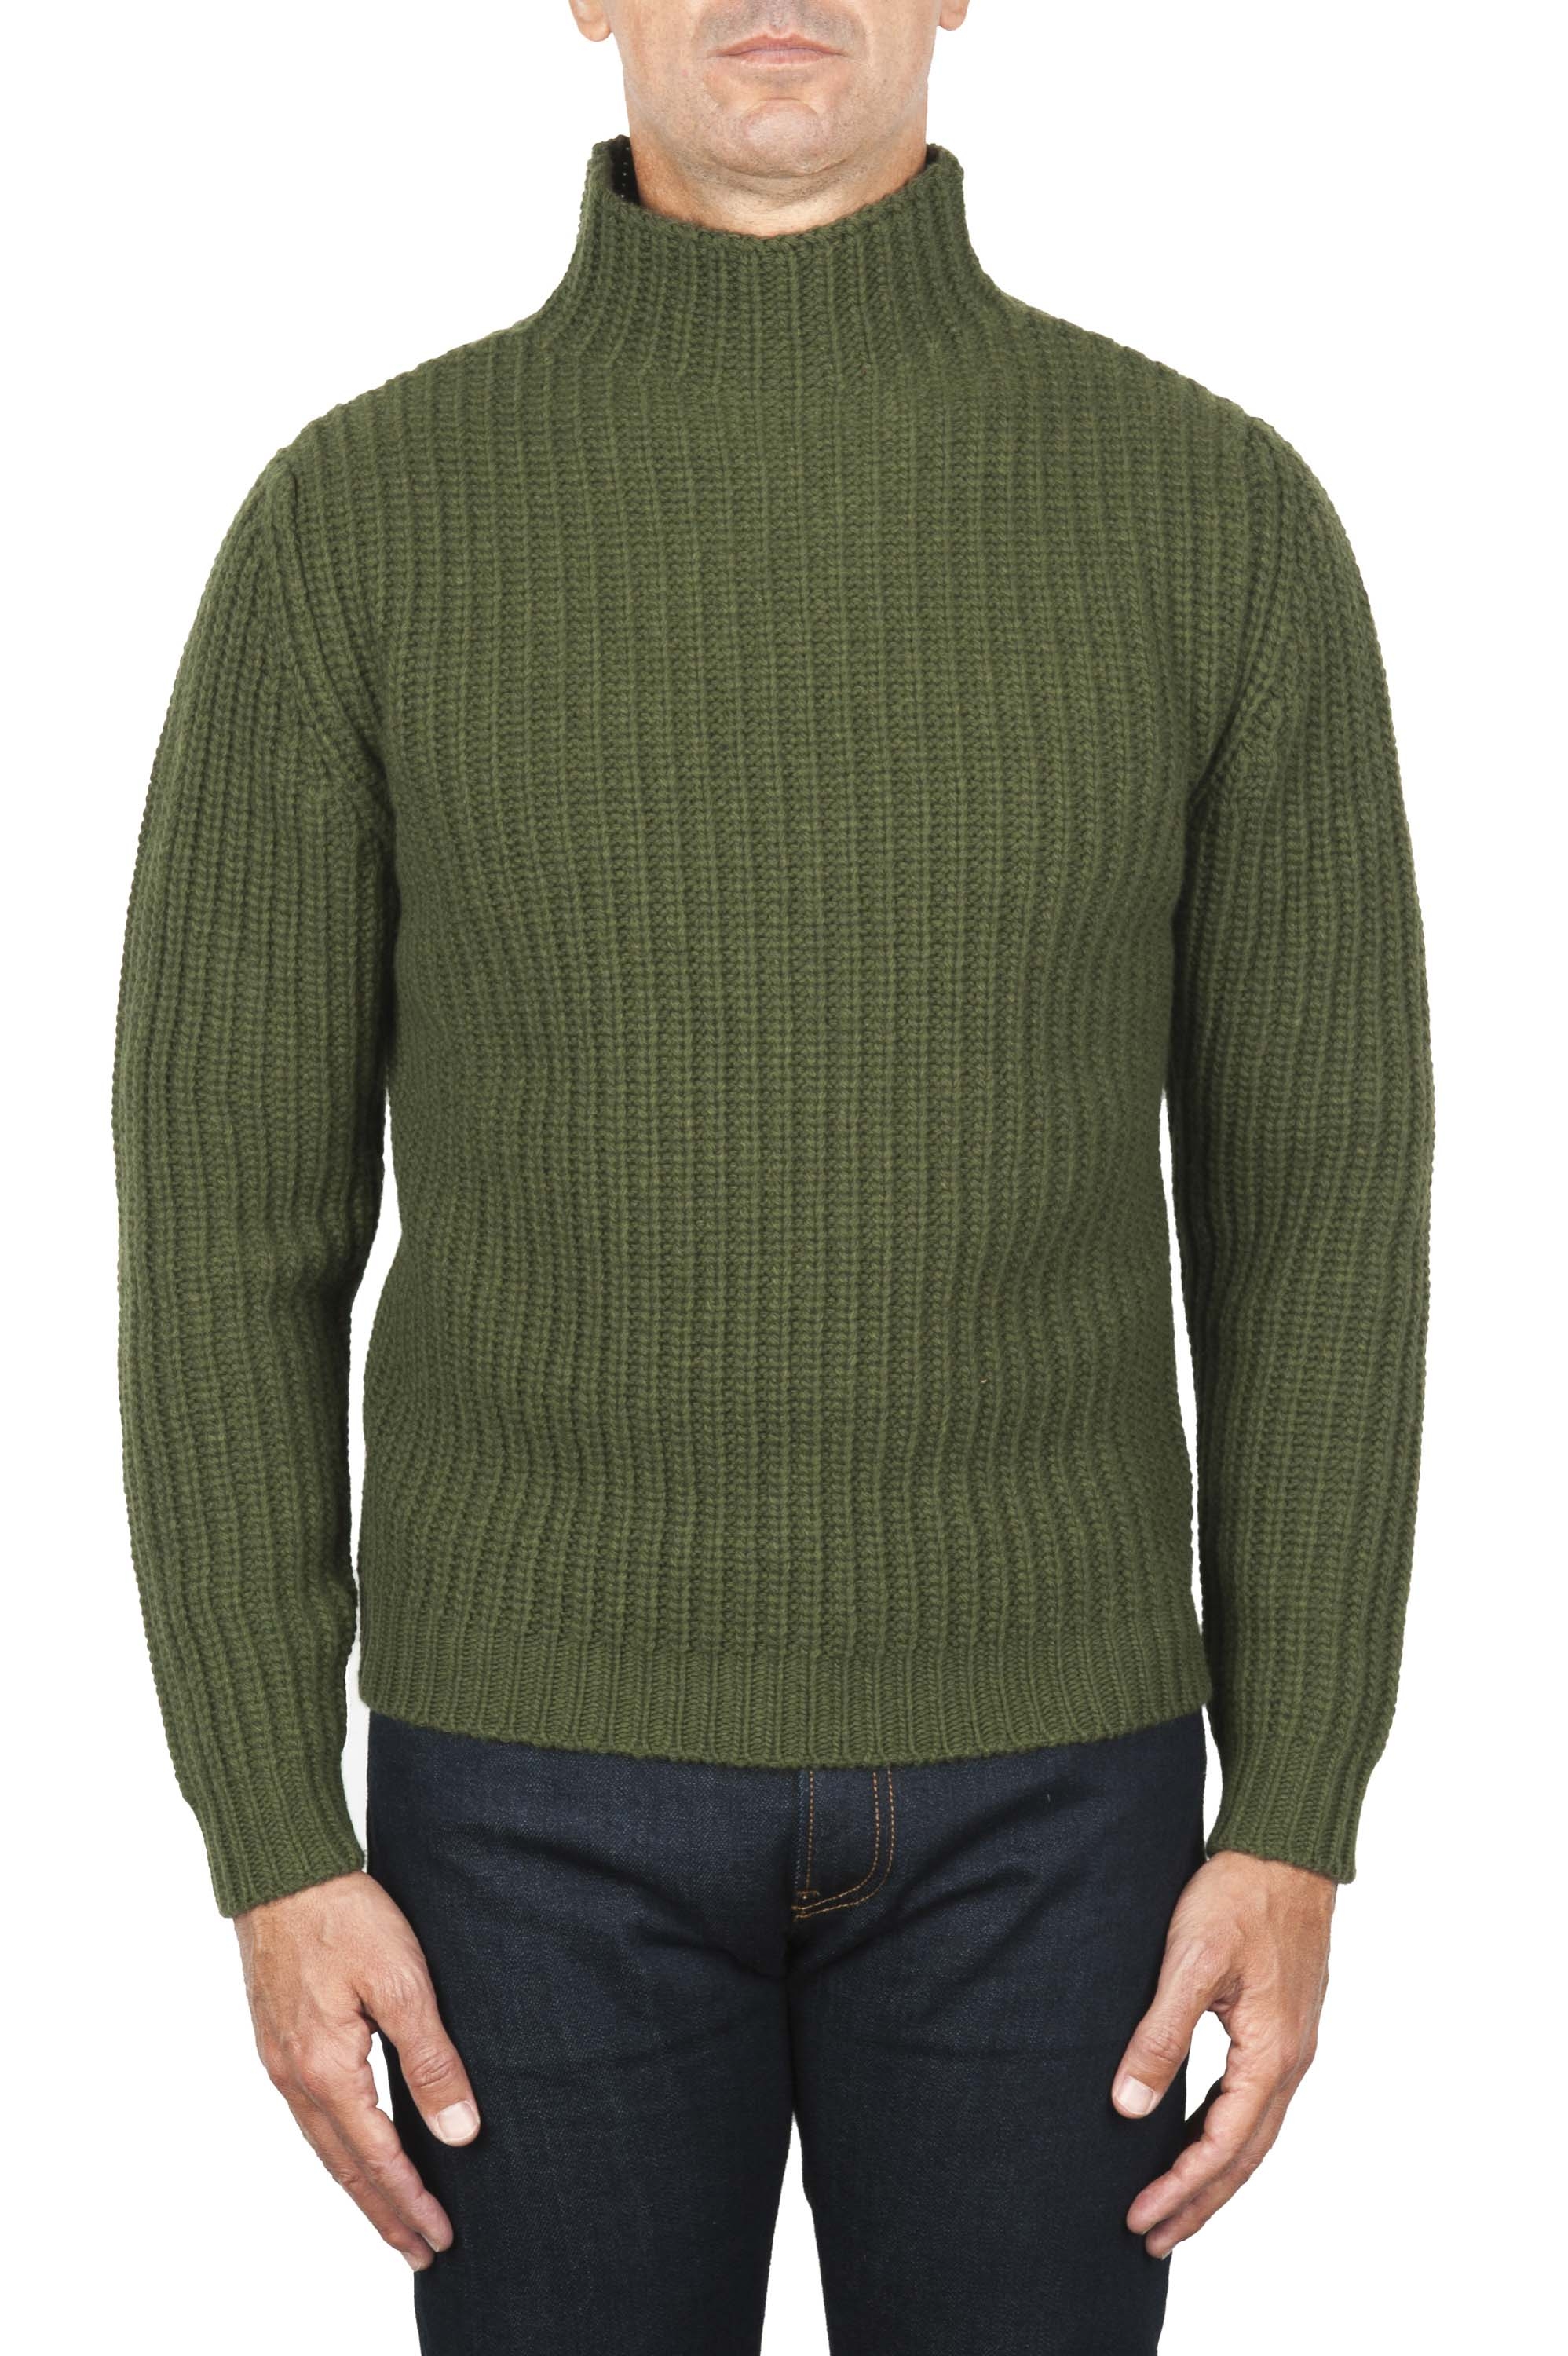 SBU 01862_19AW Green turtleneck sweater in pure wool fisherman's rib 01